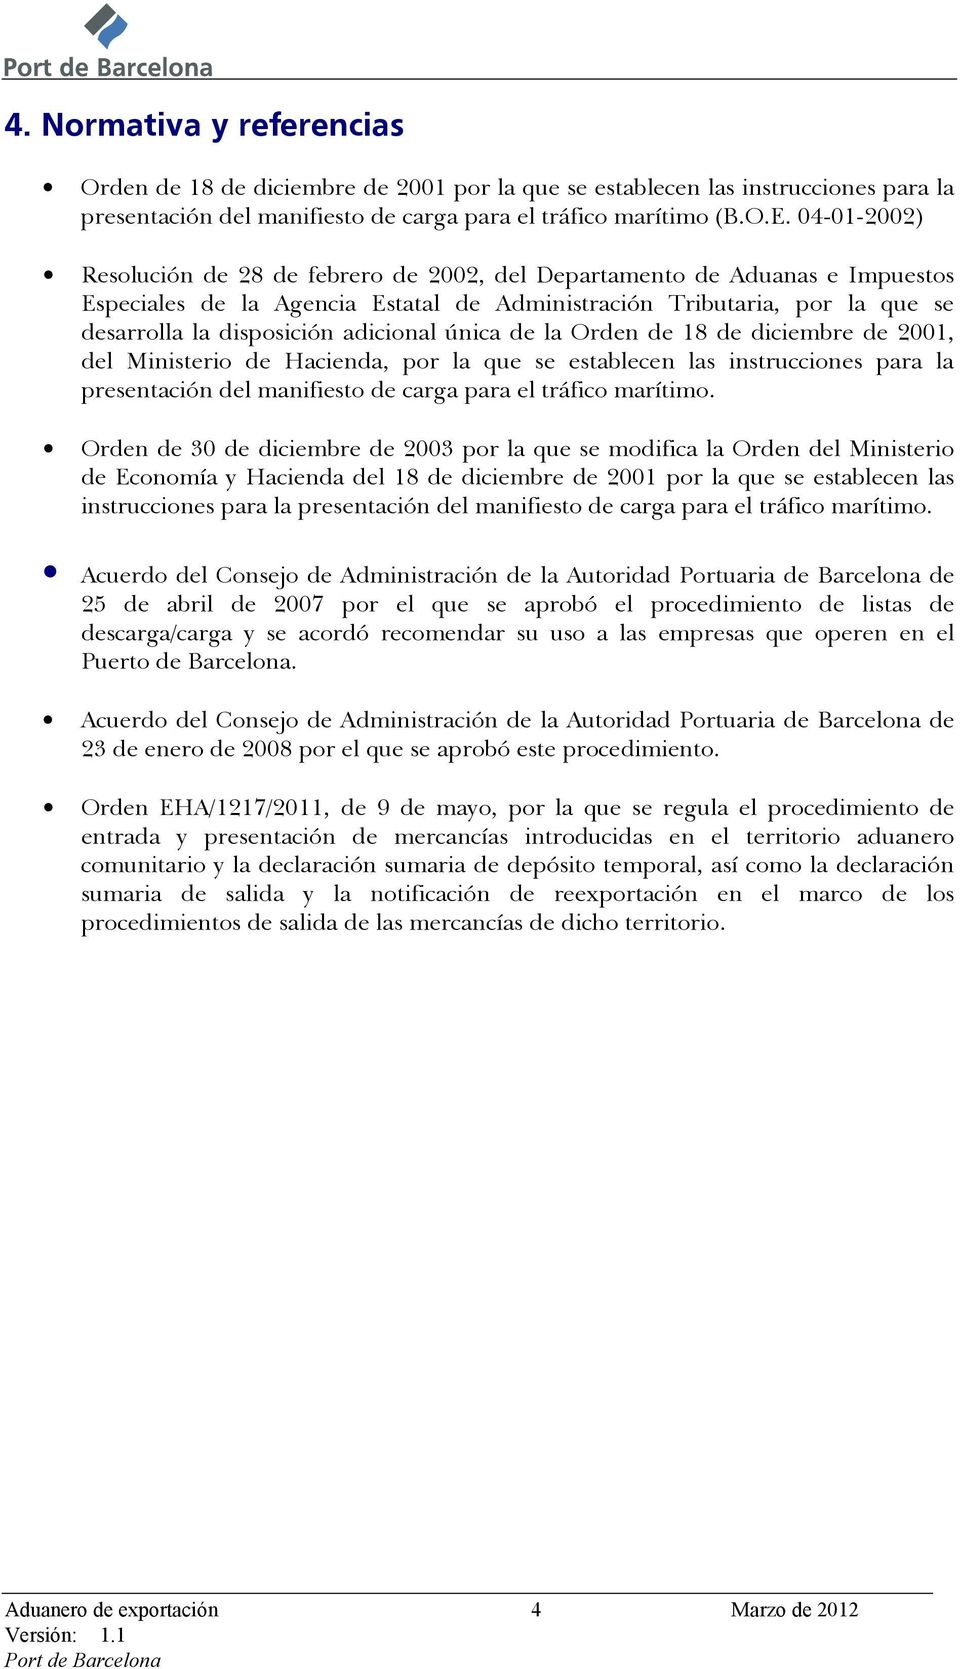 adicional única de la Orden de 18 de diciembre de 2001, del Ministerio de Hacienda, por la que se establecen las instrucciones para la presentación del manifiesto de carga para el tráfico marítimo.